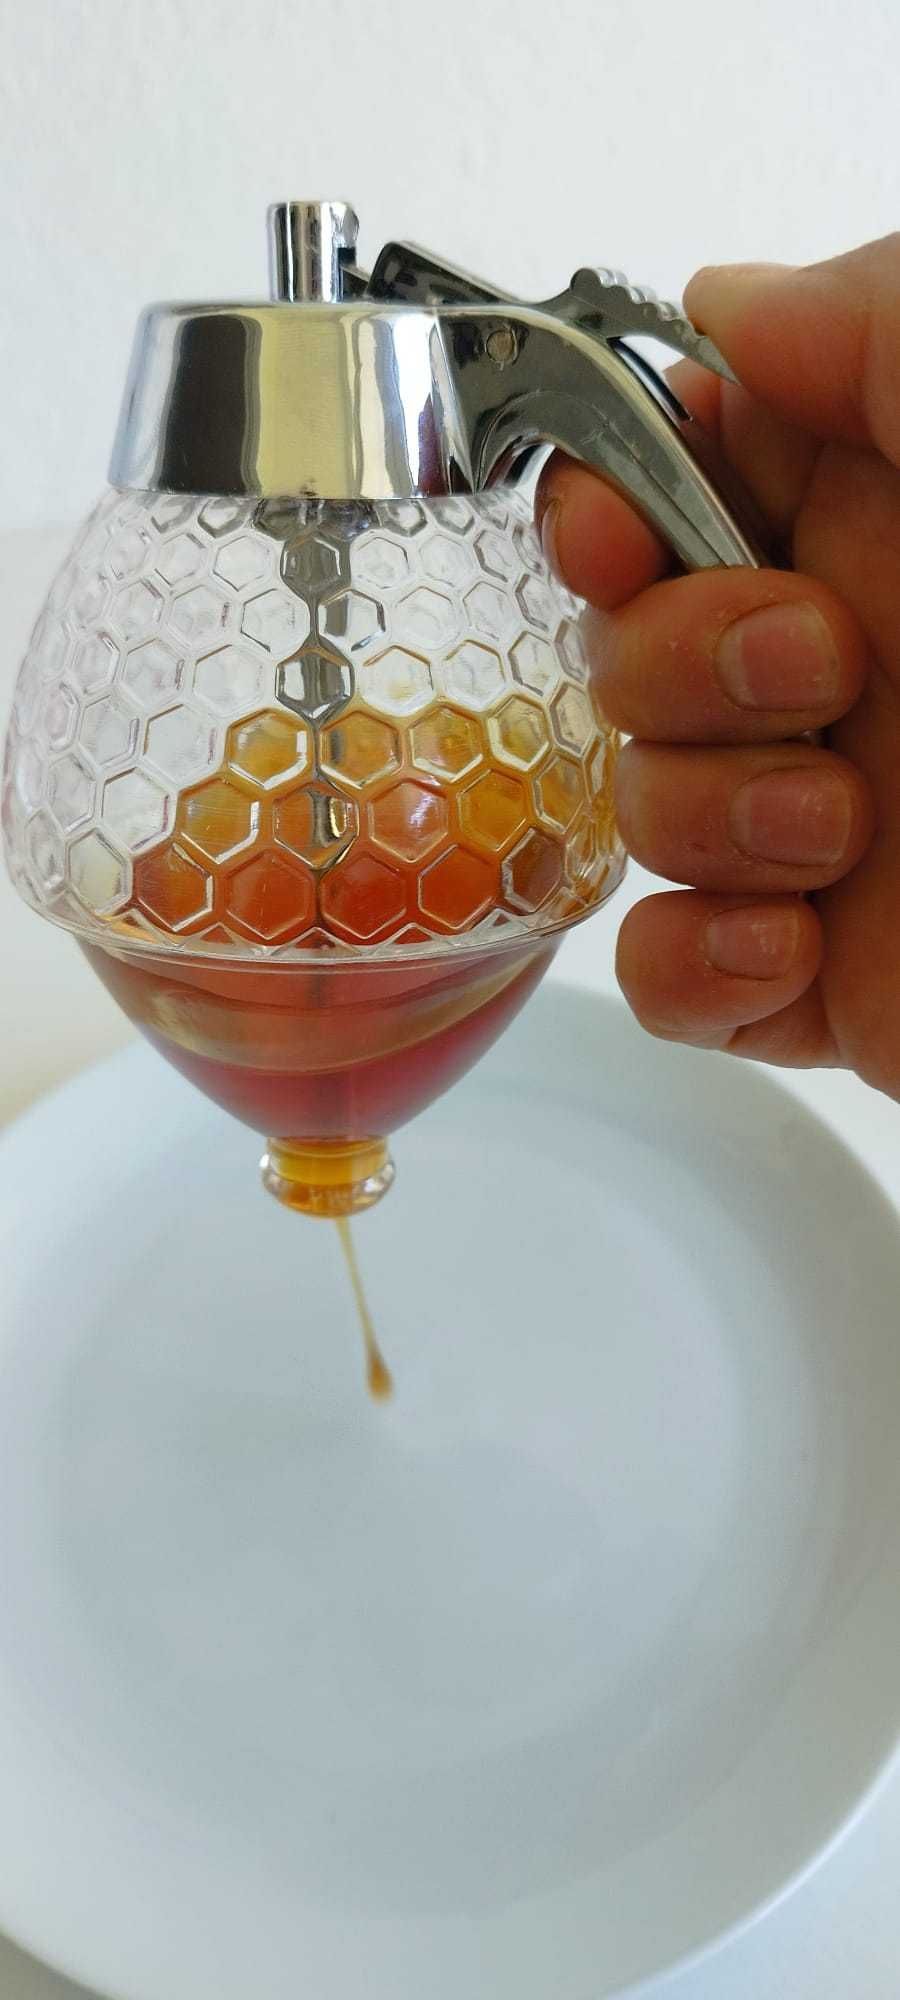 Dispensador de mel